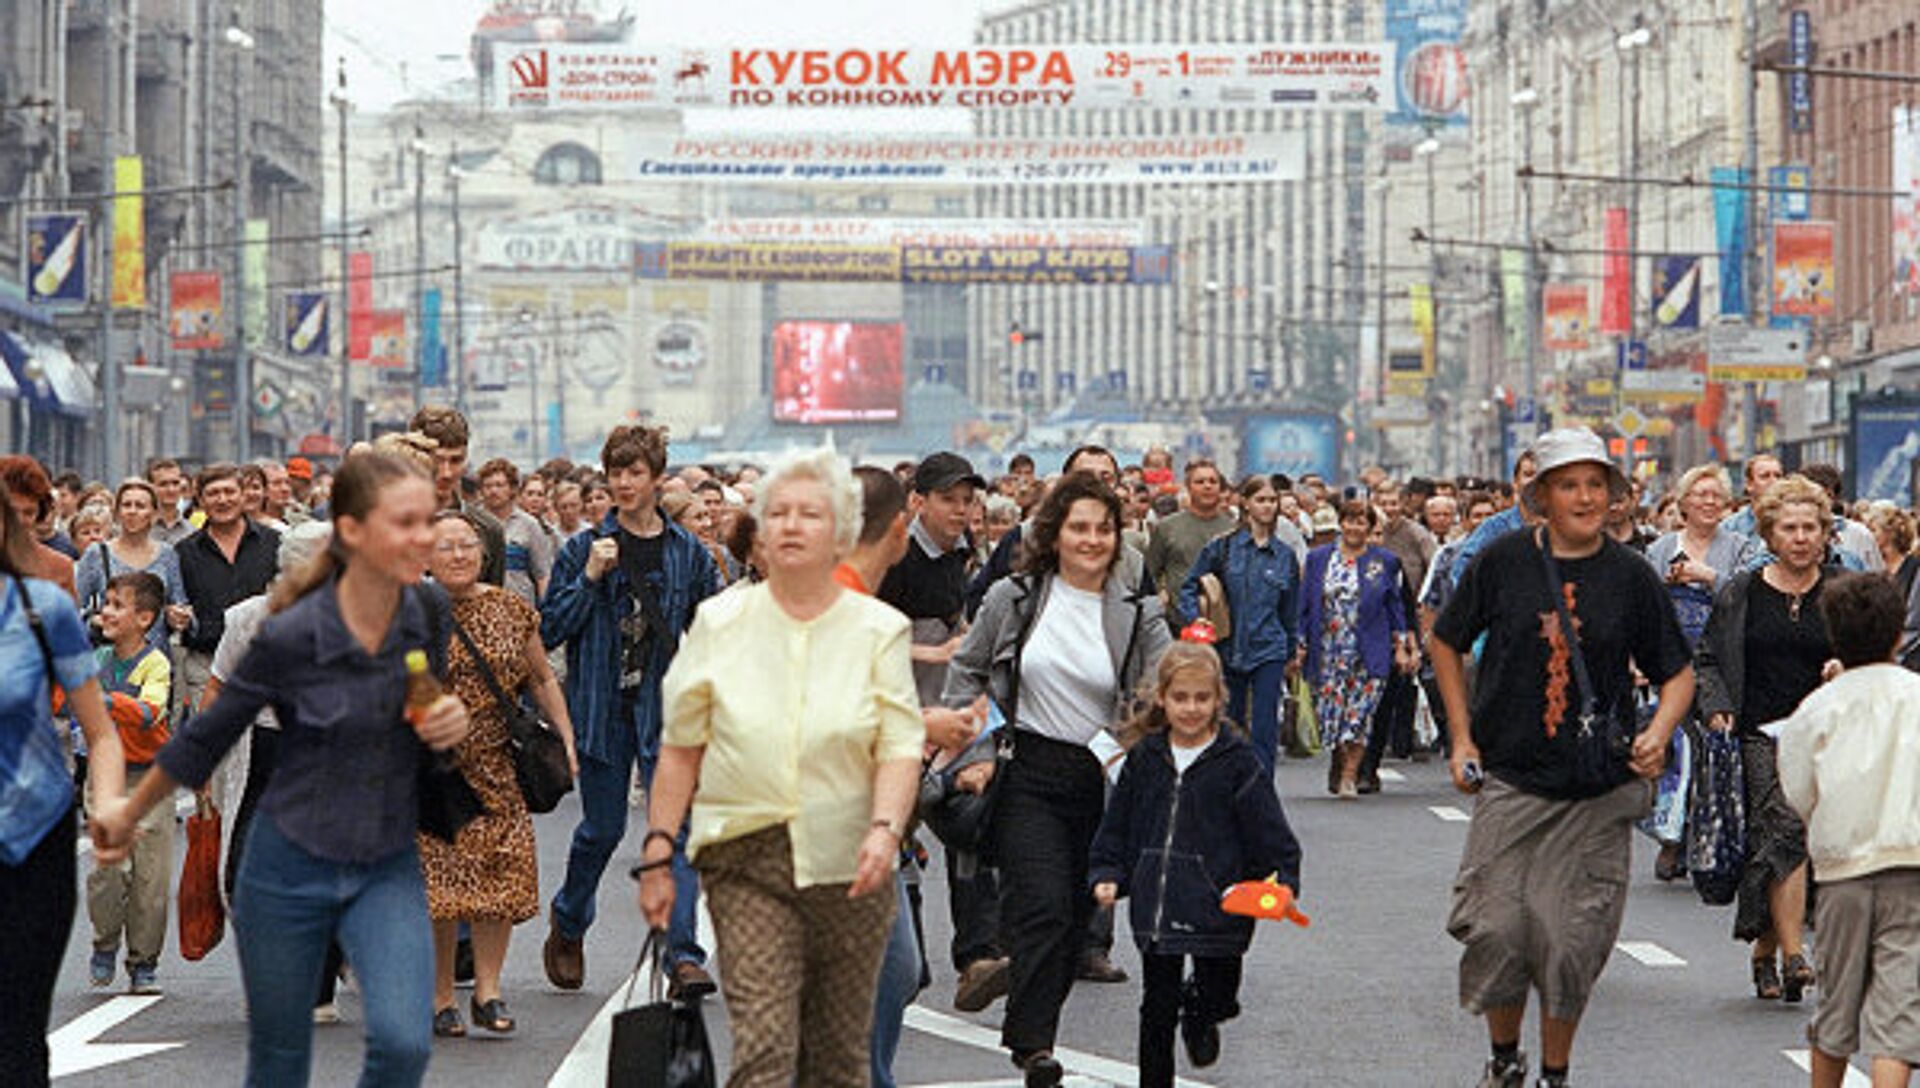 Москва млн чел. Люди на улице. Толпа людей в Москве. Люди на улице города. Люди в городе.